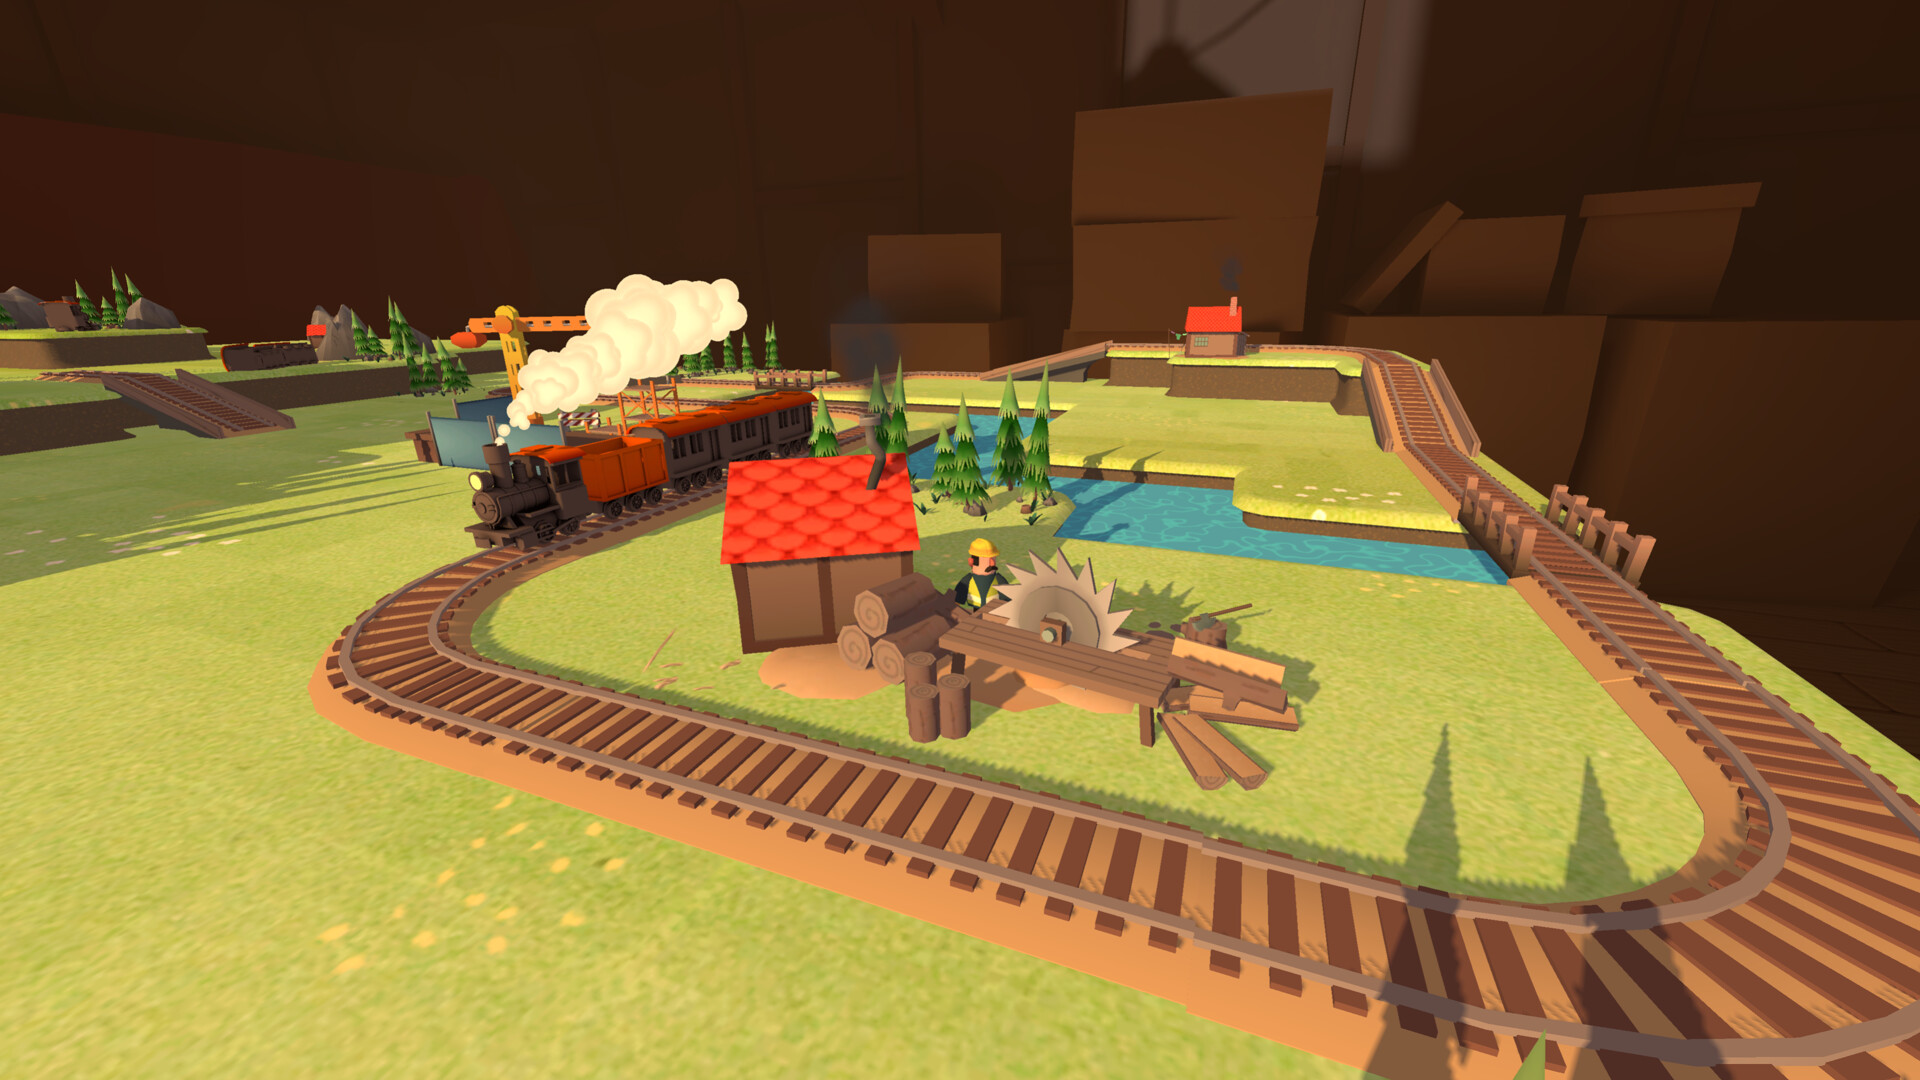 Toy Trains Steam